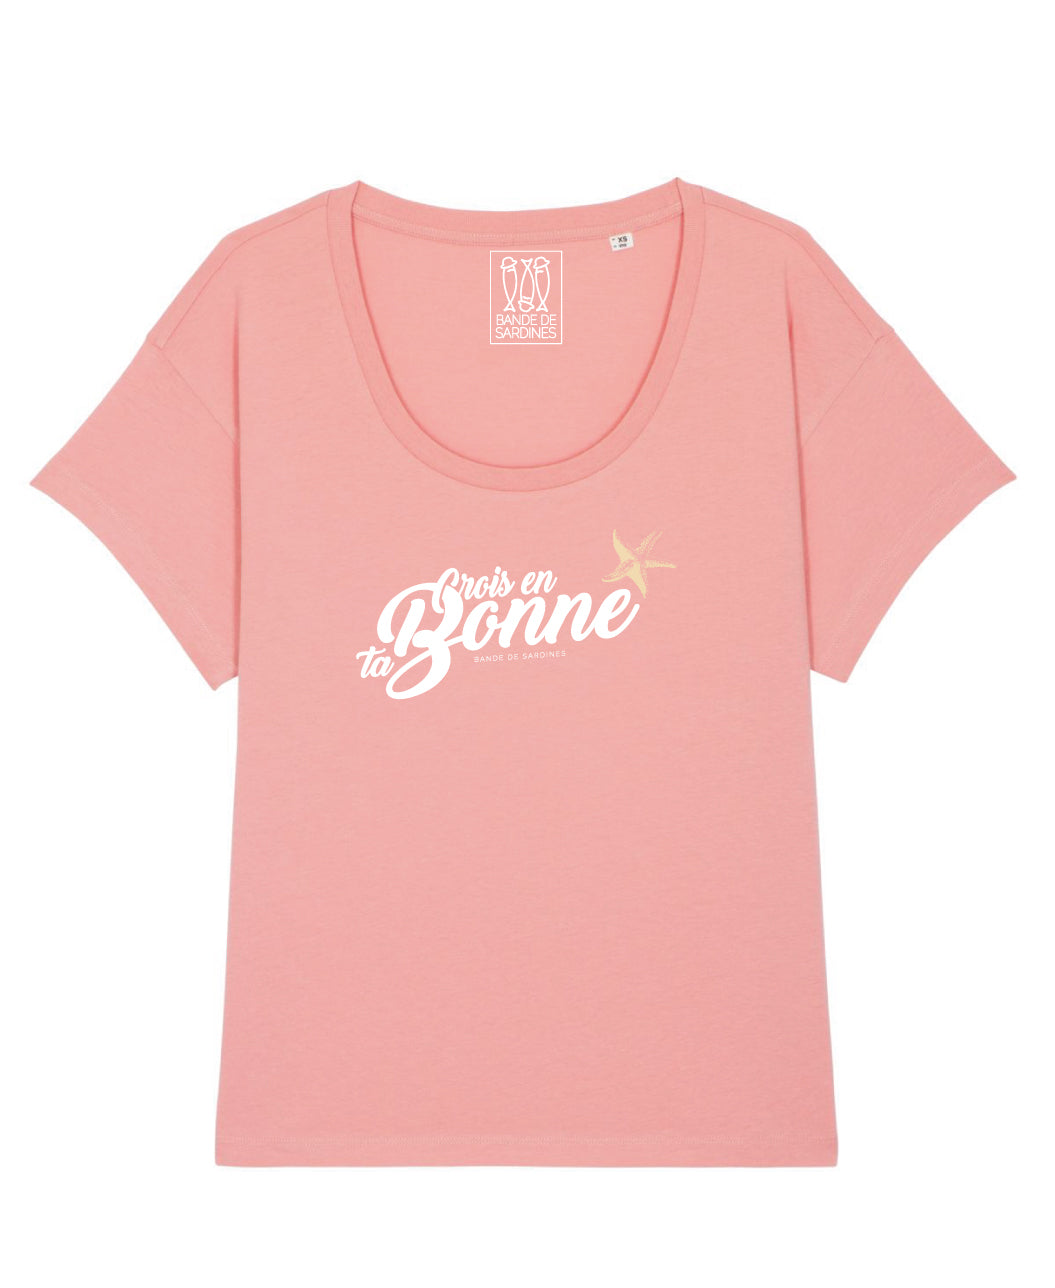 Etoile T-shirt Femme Rose